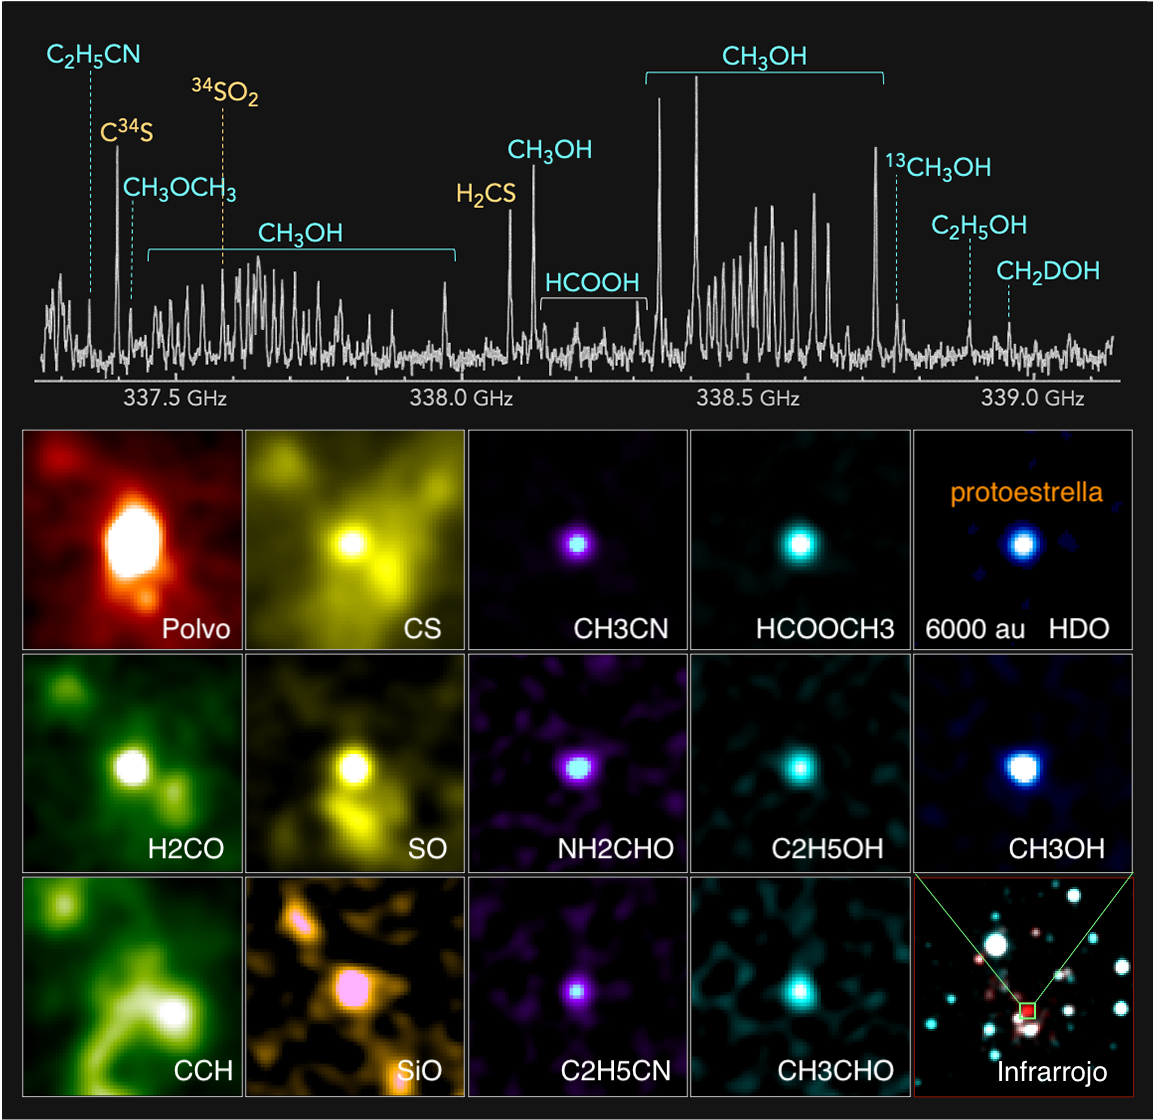 <p>Arriba: Espectro de radio de una protoestrella en el extremo exterior de la Galaxia descubierto con ALMA. Abajo: Distribuciones de las emisiones de radio de la protoestrella. Emisiones de polvo, formaldehído (H2CO), etinilradical (CCH), monosulfuro de carbono (CS), monóxido de azufre (SO), monóxido de silicio (SiO), acetonitrilo (CH3CN), formamida (NH2CHO), propanonitrilo (C2H5CN), formiato de metilo ( HCOOCH3), etanol (C2H5OH), acetaldehído (CH3CHO), agua deuterada (HDO) y metanol (CH3OH) se muestran como ejemplos. En el panel inferior derecho, se muestra una imagen compuesta de infrarrojos de 2 colores de la región circundante (rojo: 2,16 m y azul: 1,25 m, según datos de 2MASS). Crédito: ALMA (ESO / NAOJ / NRAO), T. Shimonishi (Universidad de Niigata)</p>
